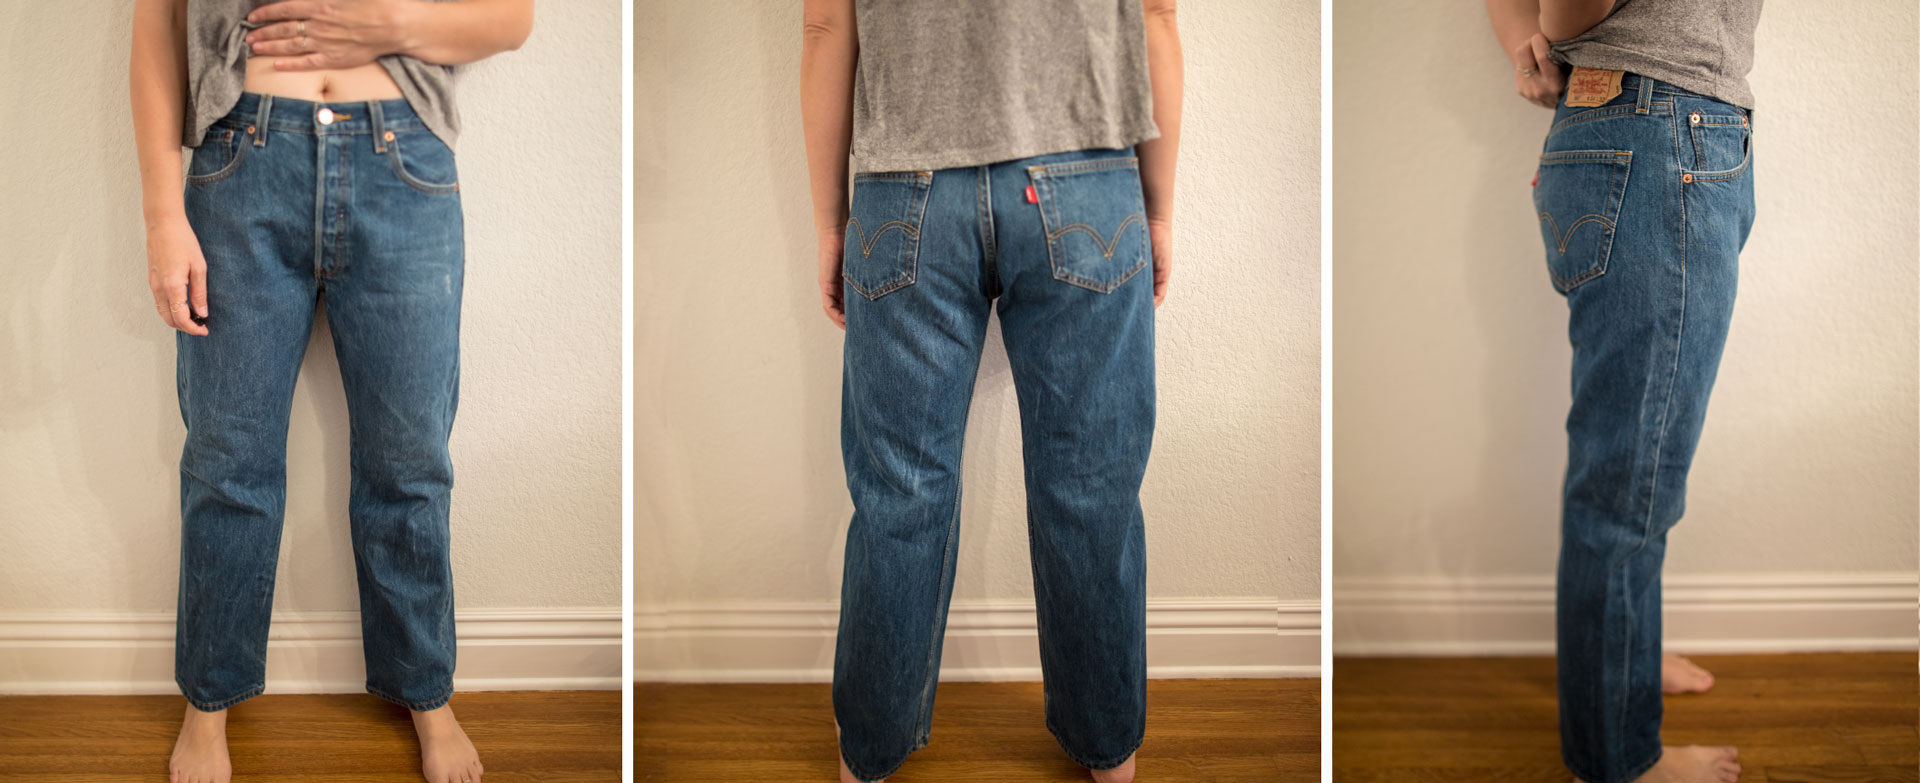 Levi Jeans Conversion Chart